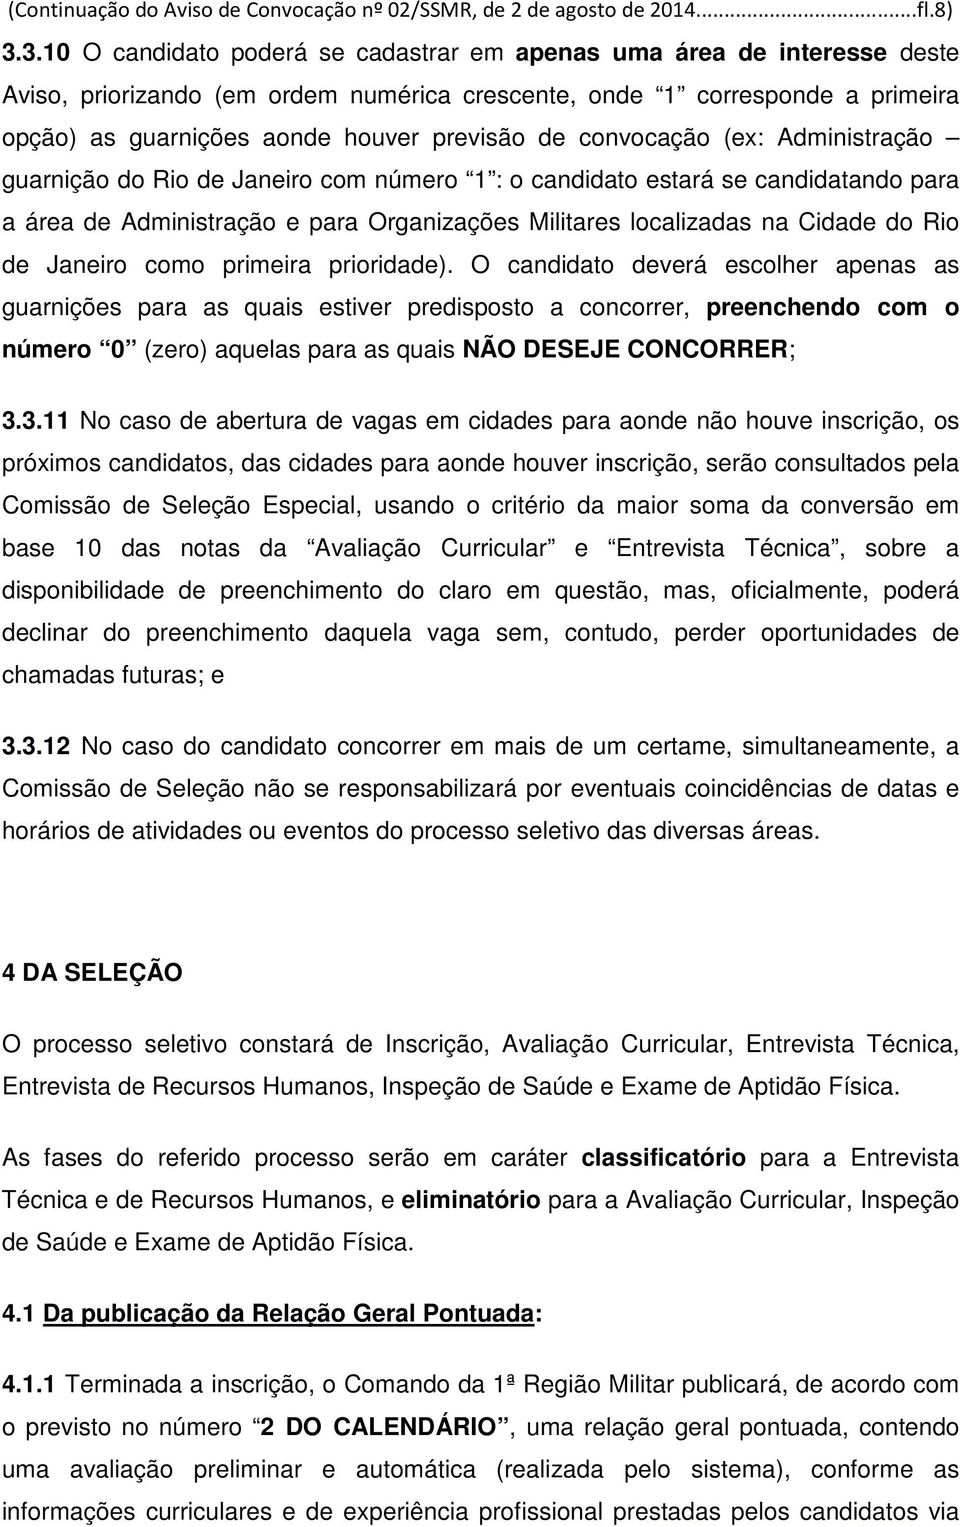 convocação (ex: Administração guarnição do Rio de Janeiro com número 1 : o candidato estará se candidatando para a área de Administração e para Organizações Militares localizadas na Cidade do Rio de